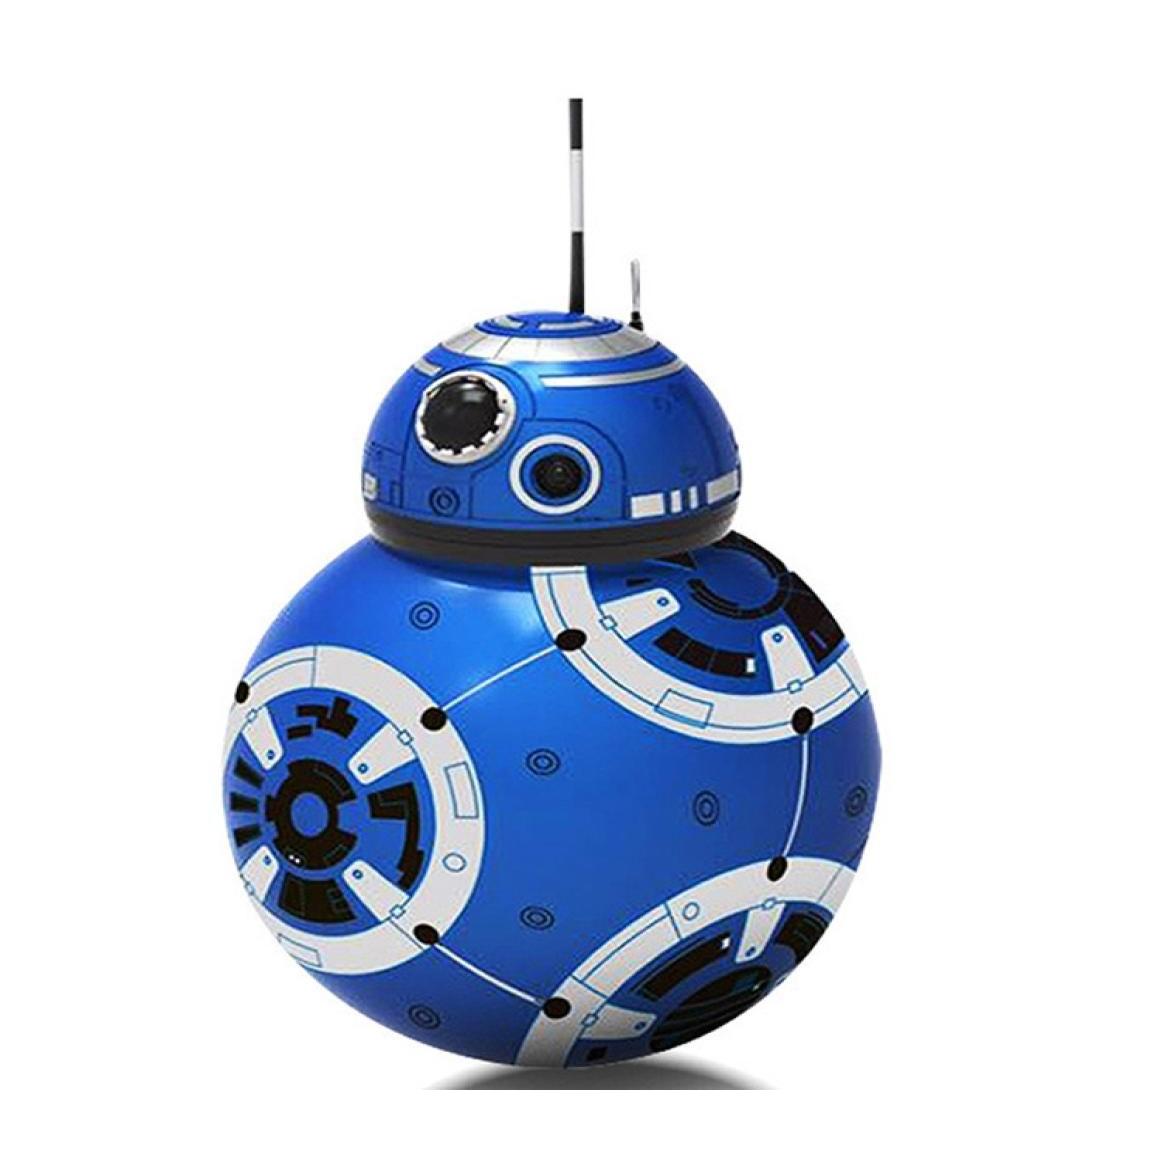 Animais elétricos/RC RC BB8 Droid Robot Ball Ação Inteligente Presente de brinquedo infantil com som 24g Controle remoto8255567 Drop entrega brinquedos dhsql